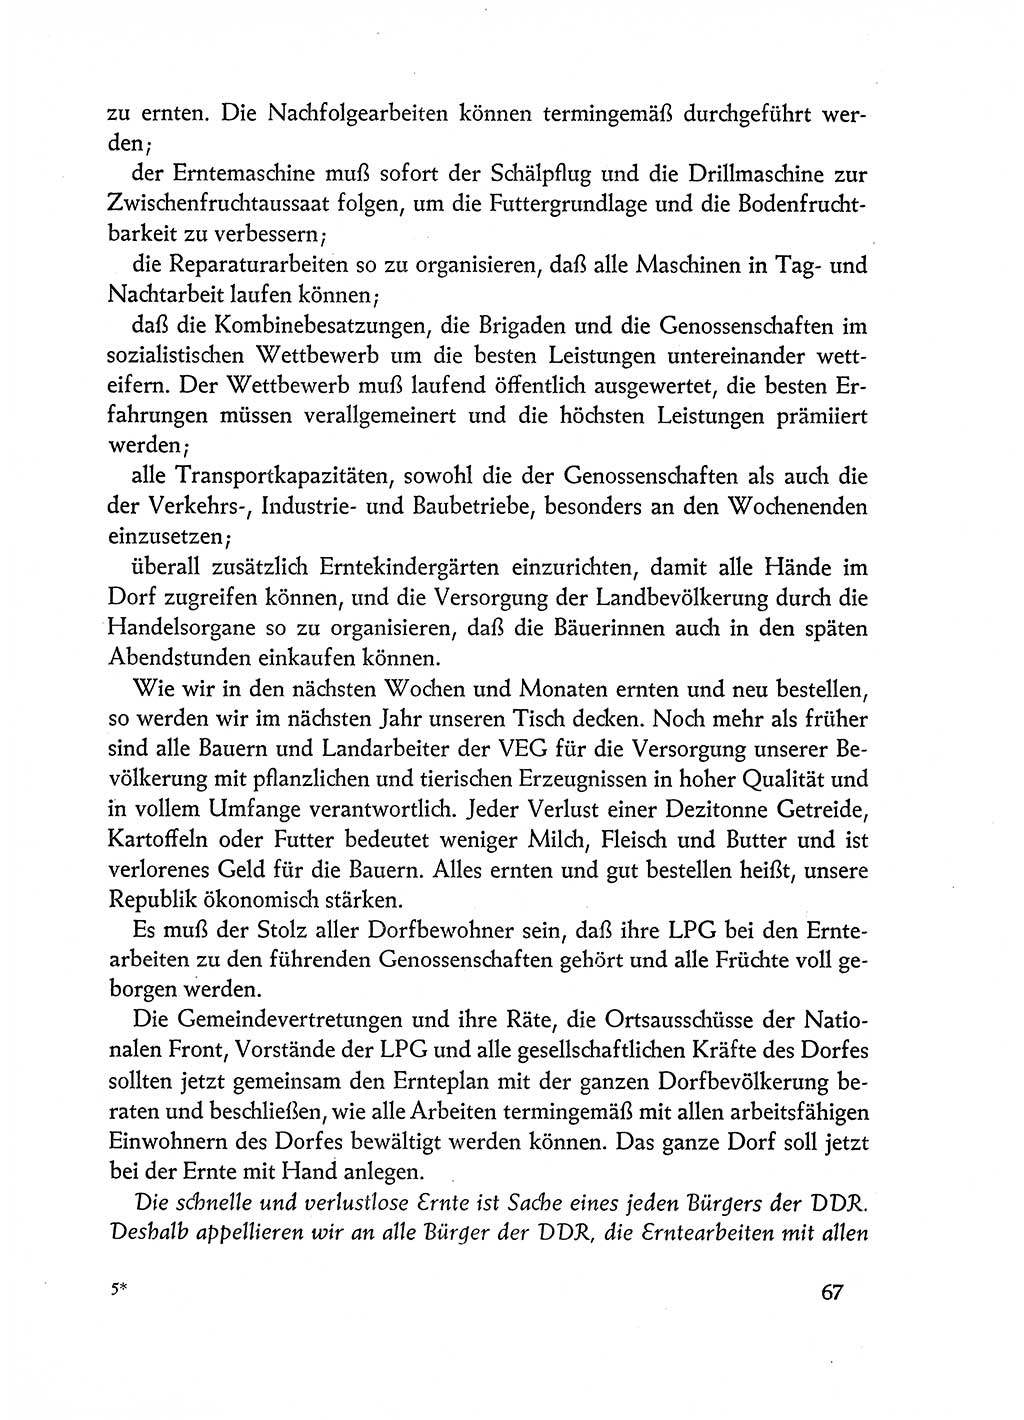 Dokumente der Sozialistischen Einheitspartei Deutschlands (SED) [Deutsche Demokratische Republik (DDR)] 1962-1963, Seite 67 (Dok. SED DDR 1962-1963, S. 67)